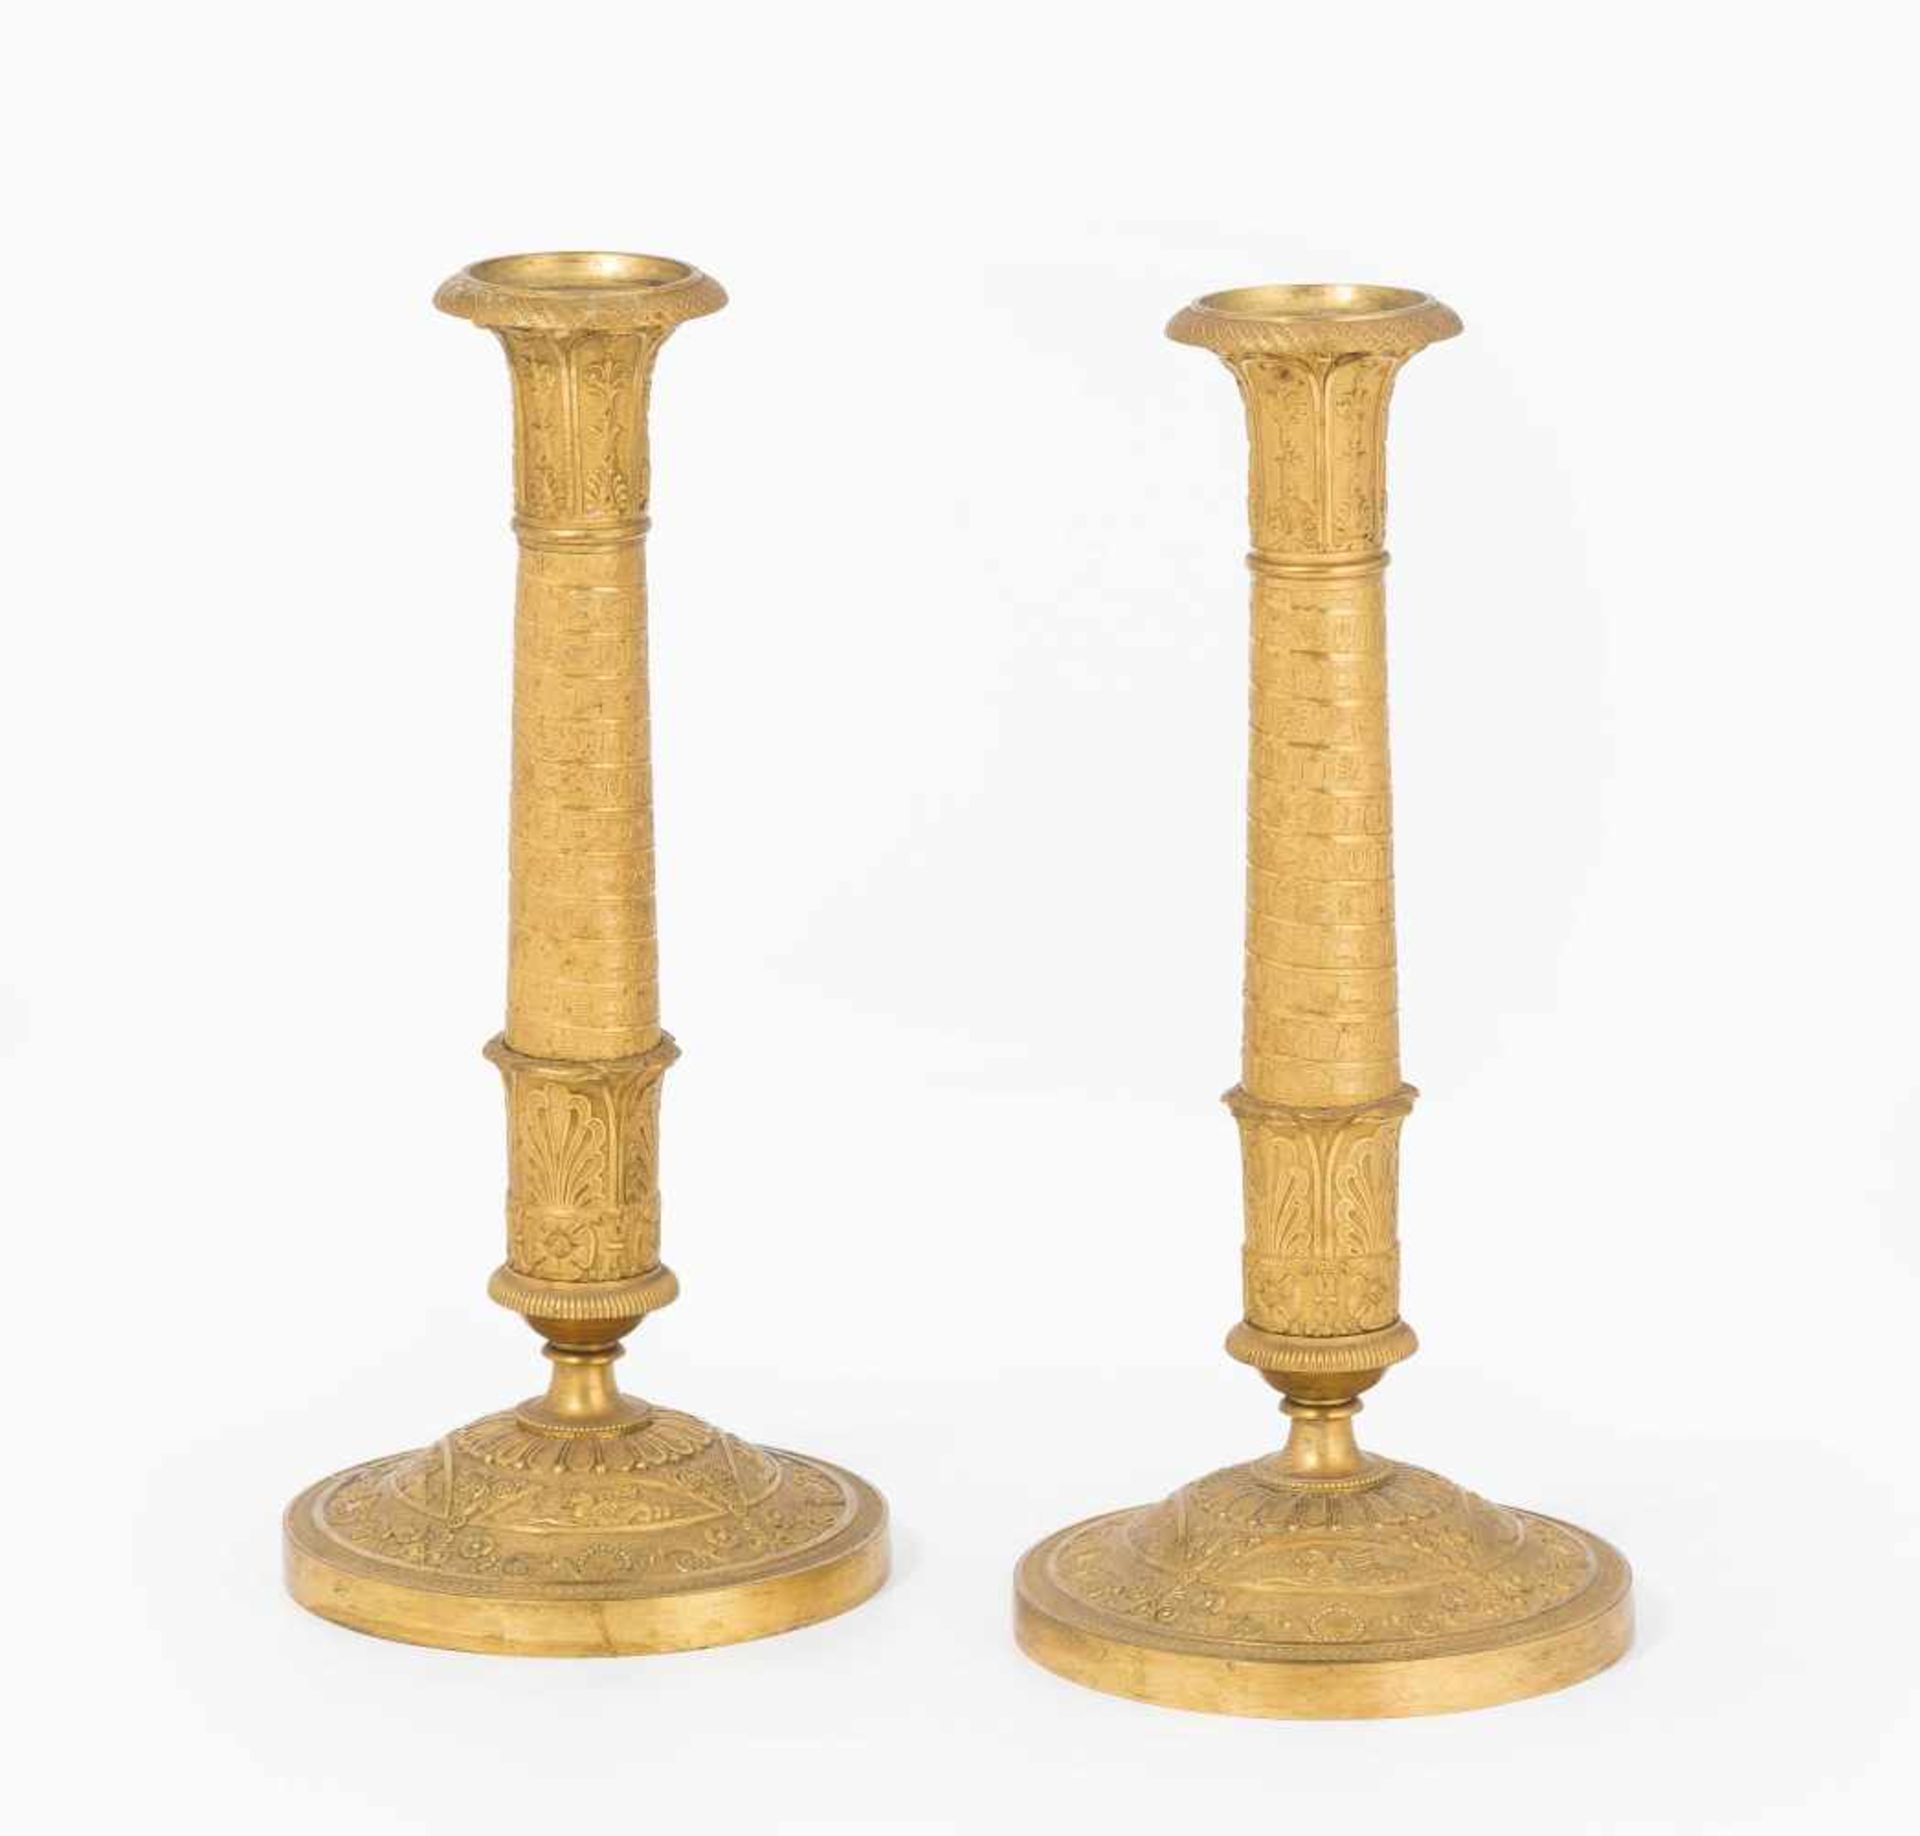 1 Paar KerzenstöckeFrankreich, Empire-Stil, 19.Jh. Bronze, vergoldet. Säulenschaft über Rundfuss.